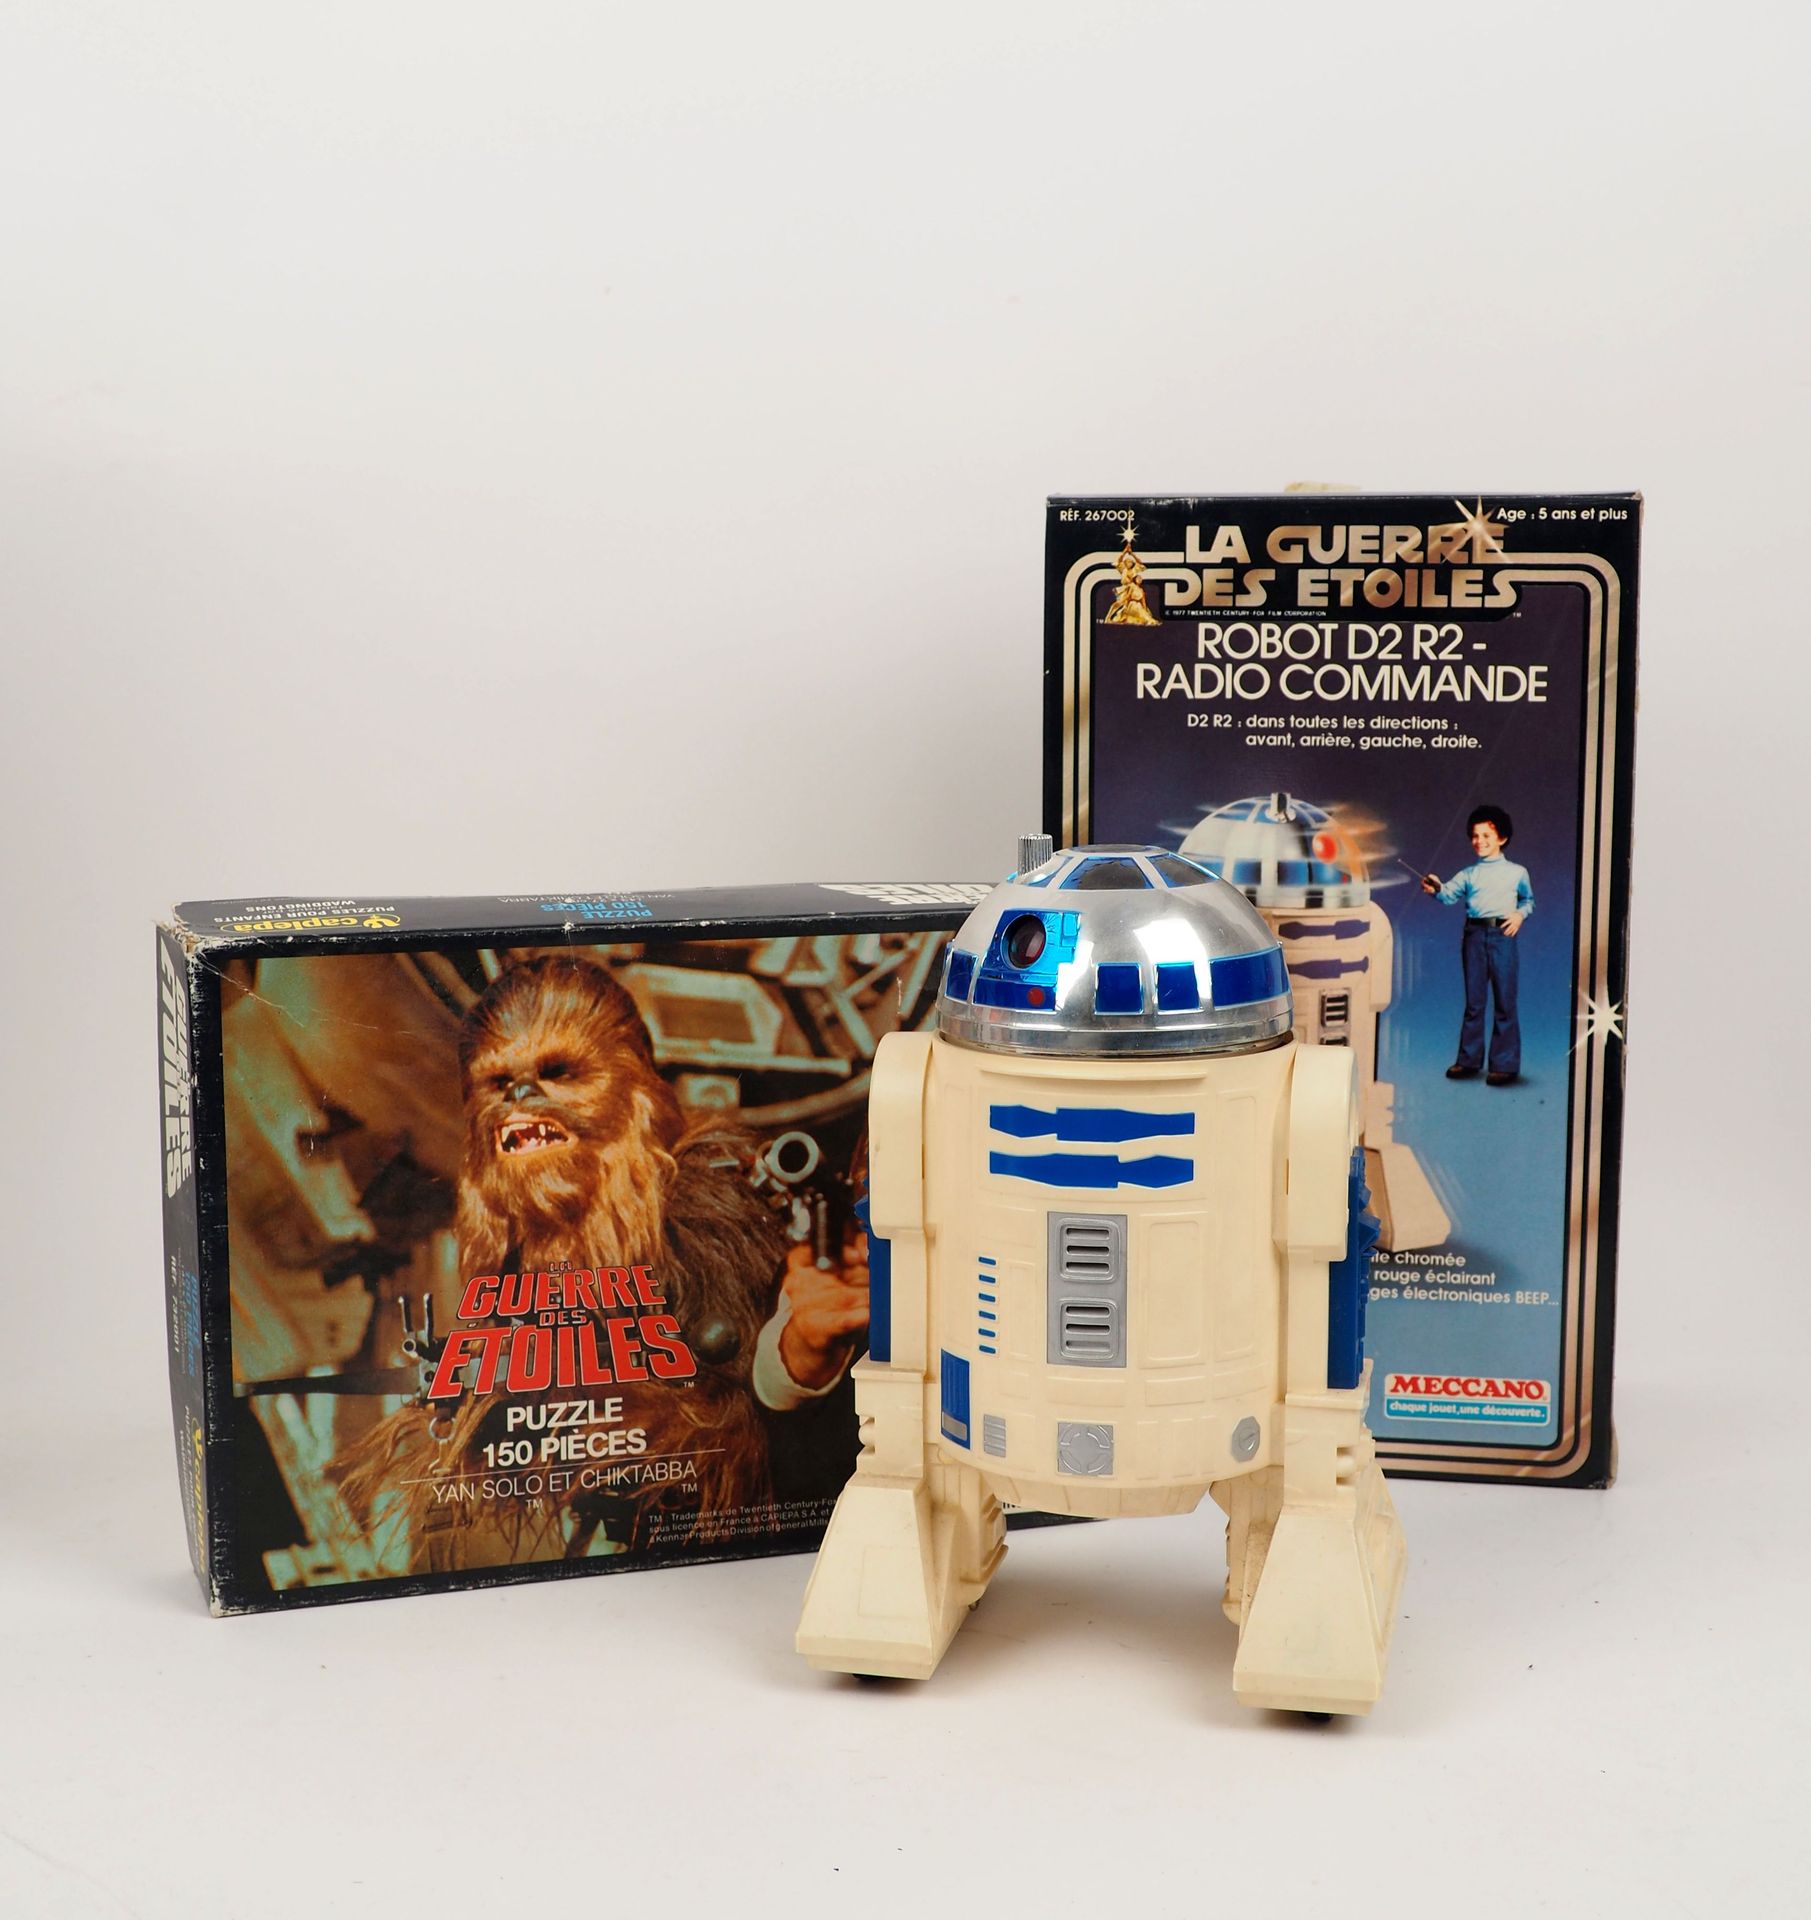 Null STAR WARS
Ensemble de deux boîtes comprenant un puzzle Han Solo édité par W&hellip;